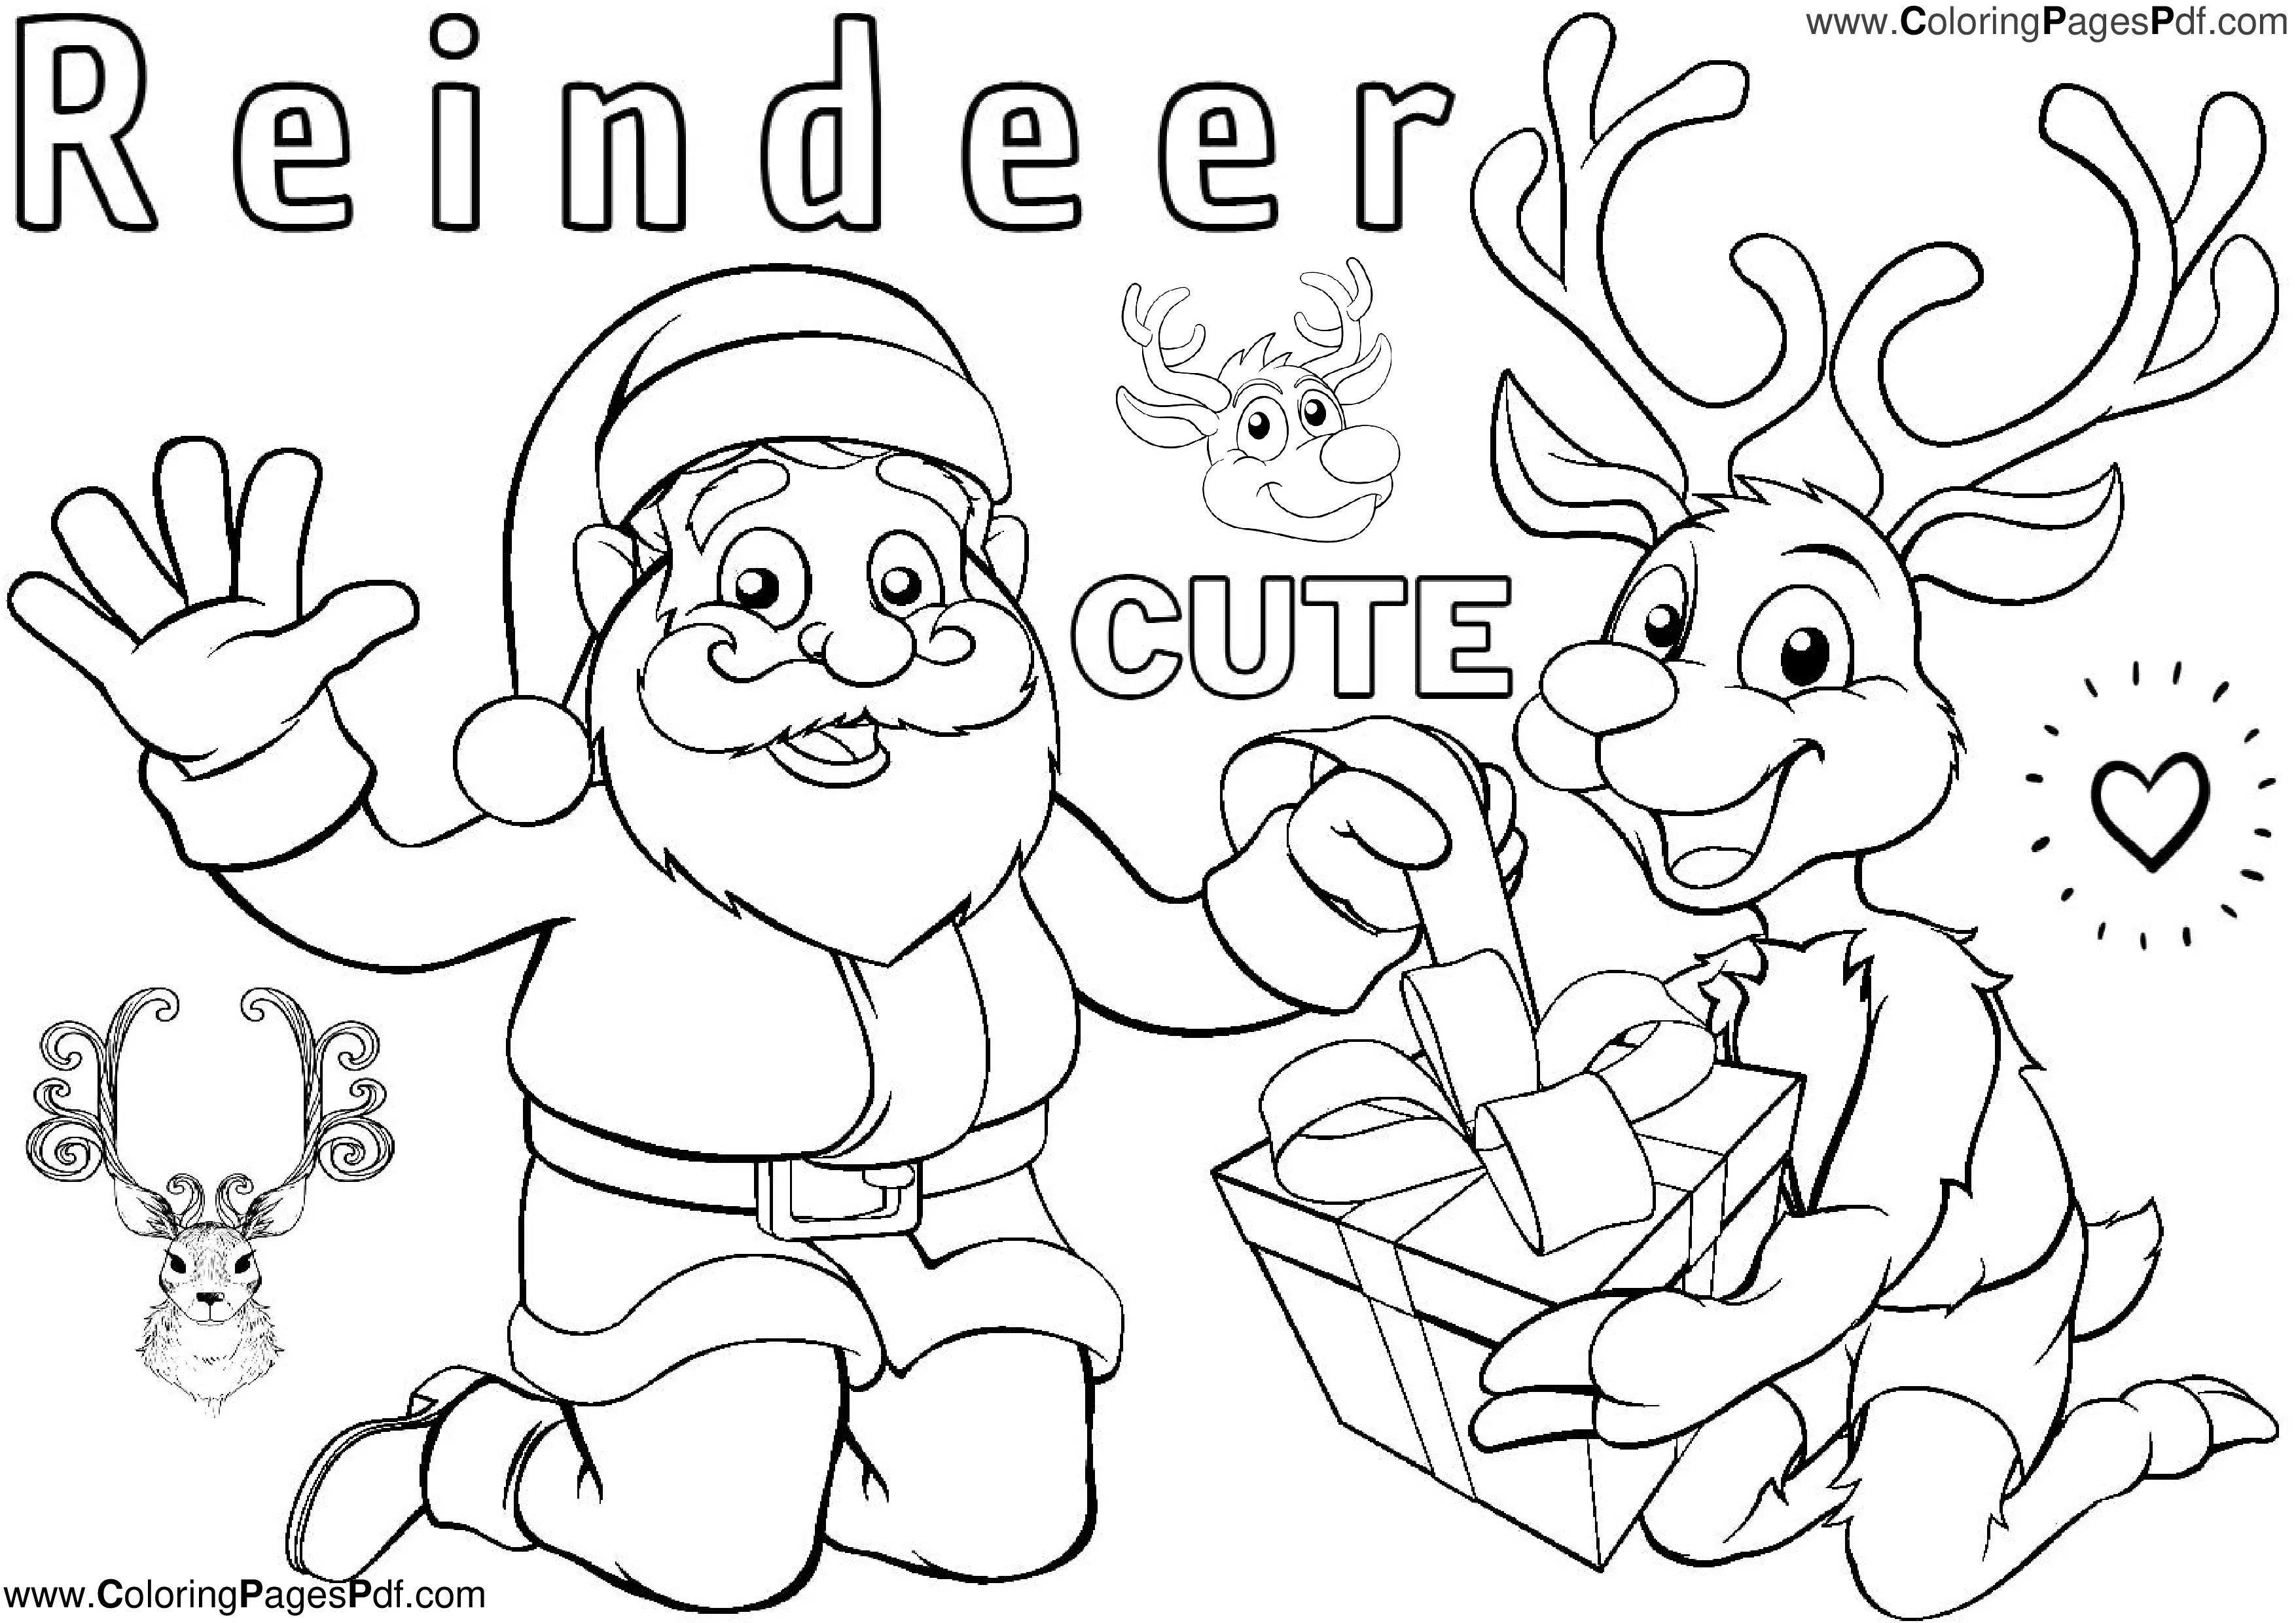 Cute reindeer coloring pages